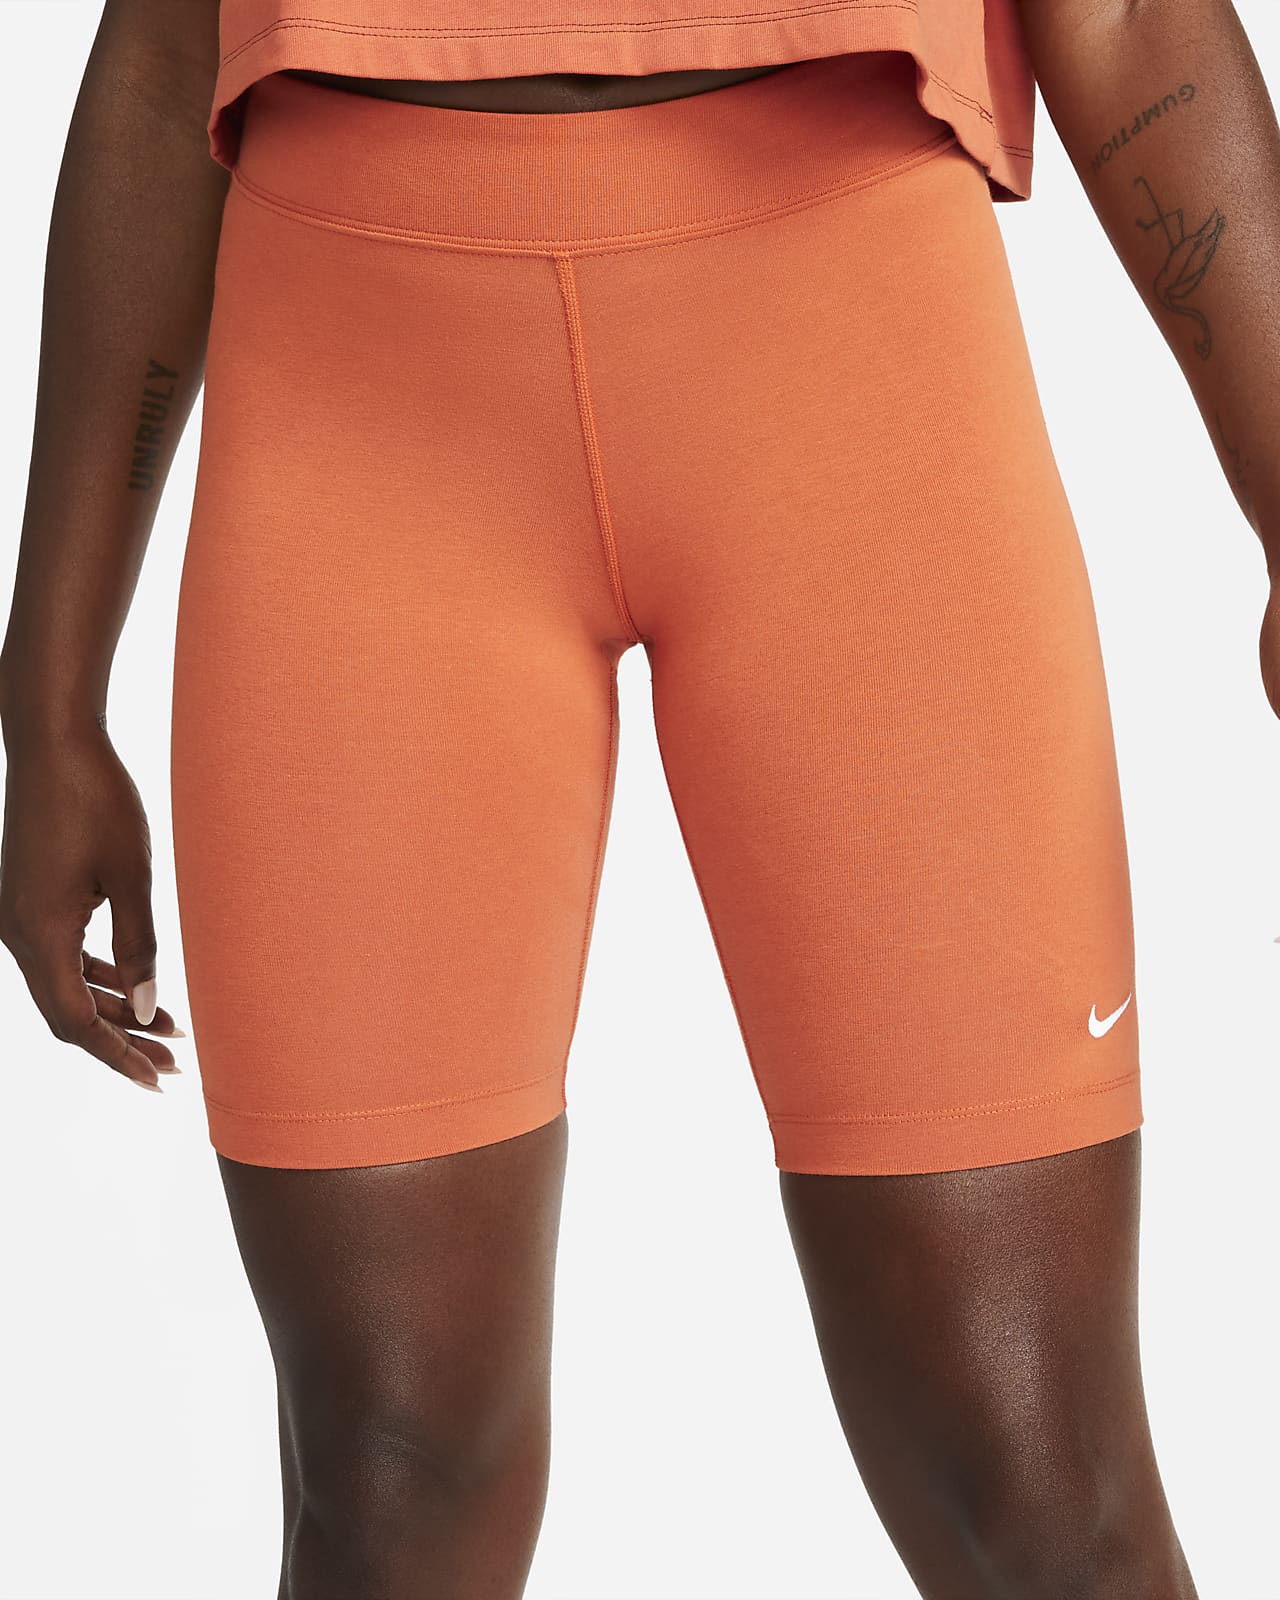 Nike Sportswear Essential Women's Bike Shorts